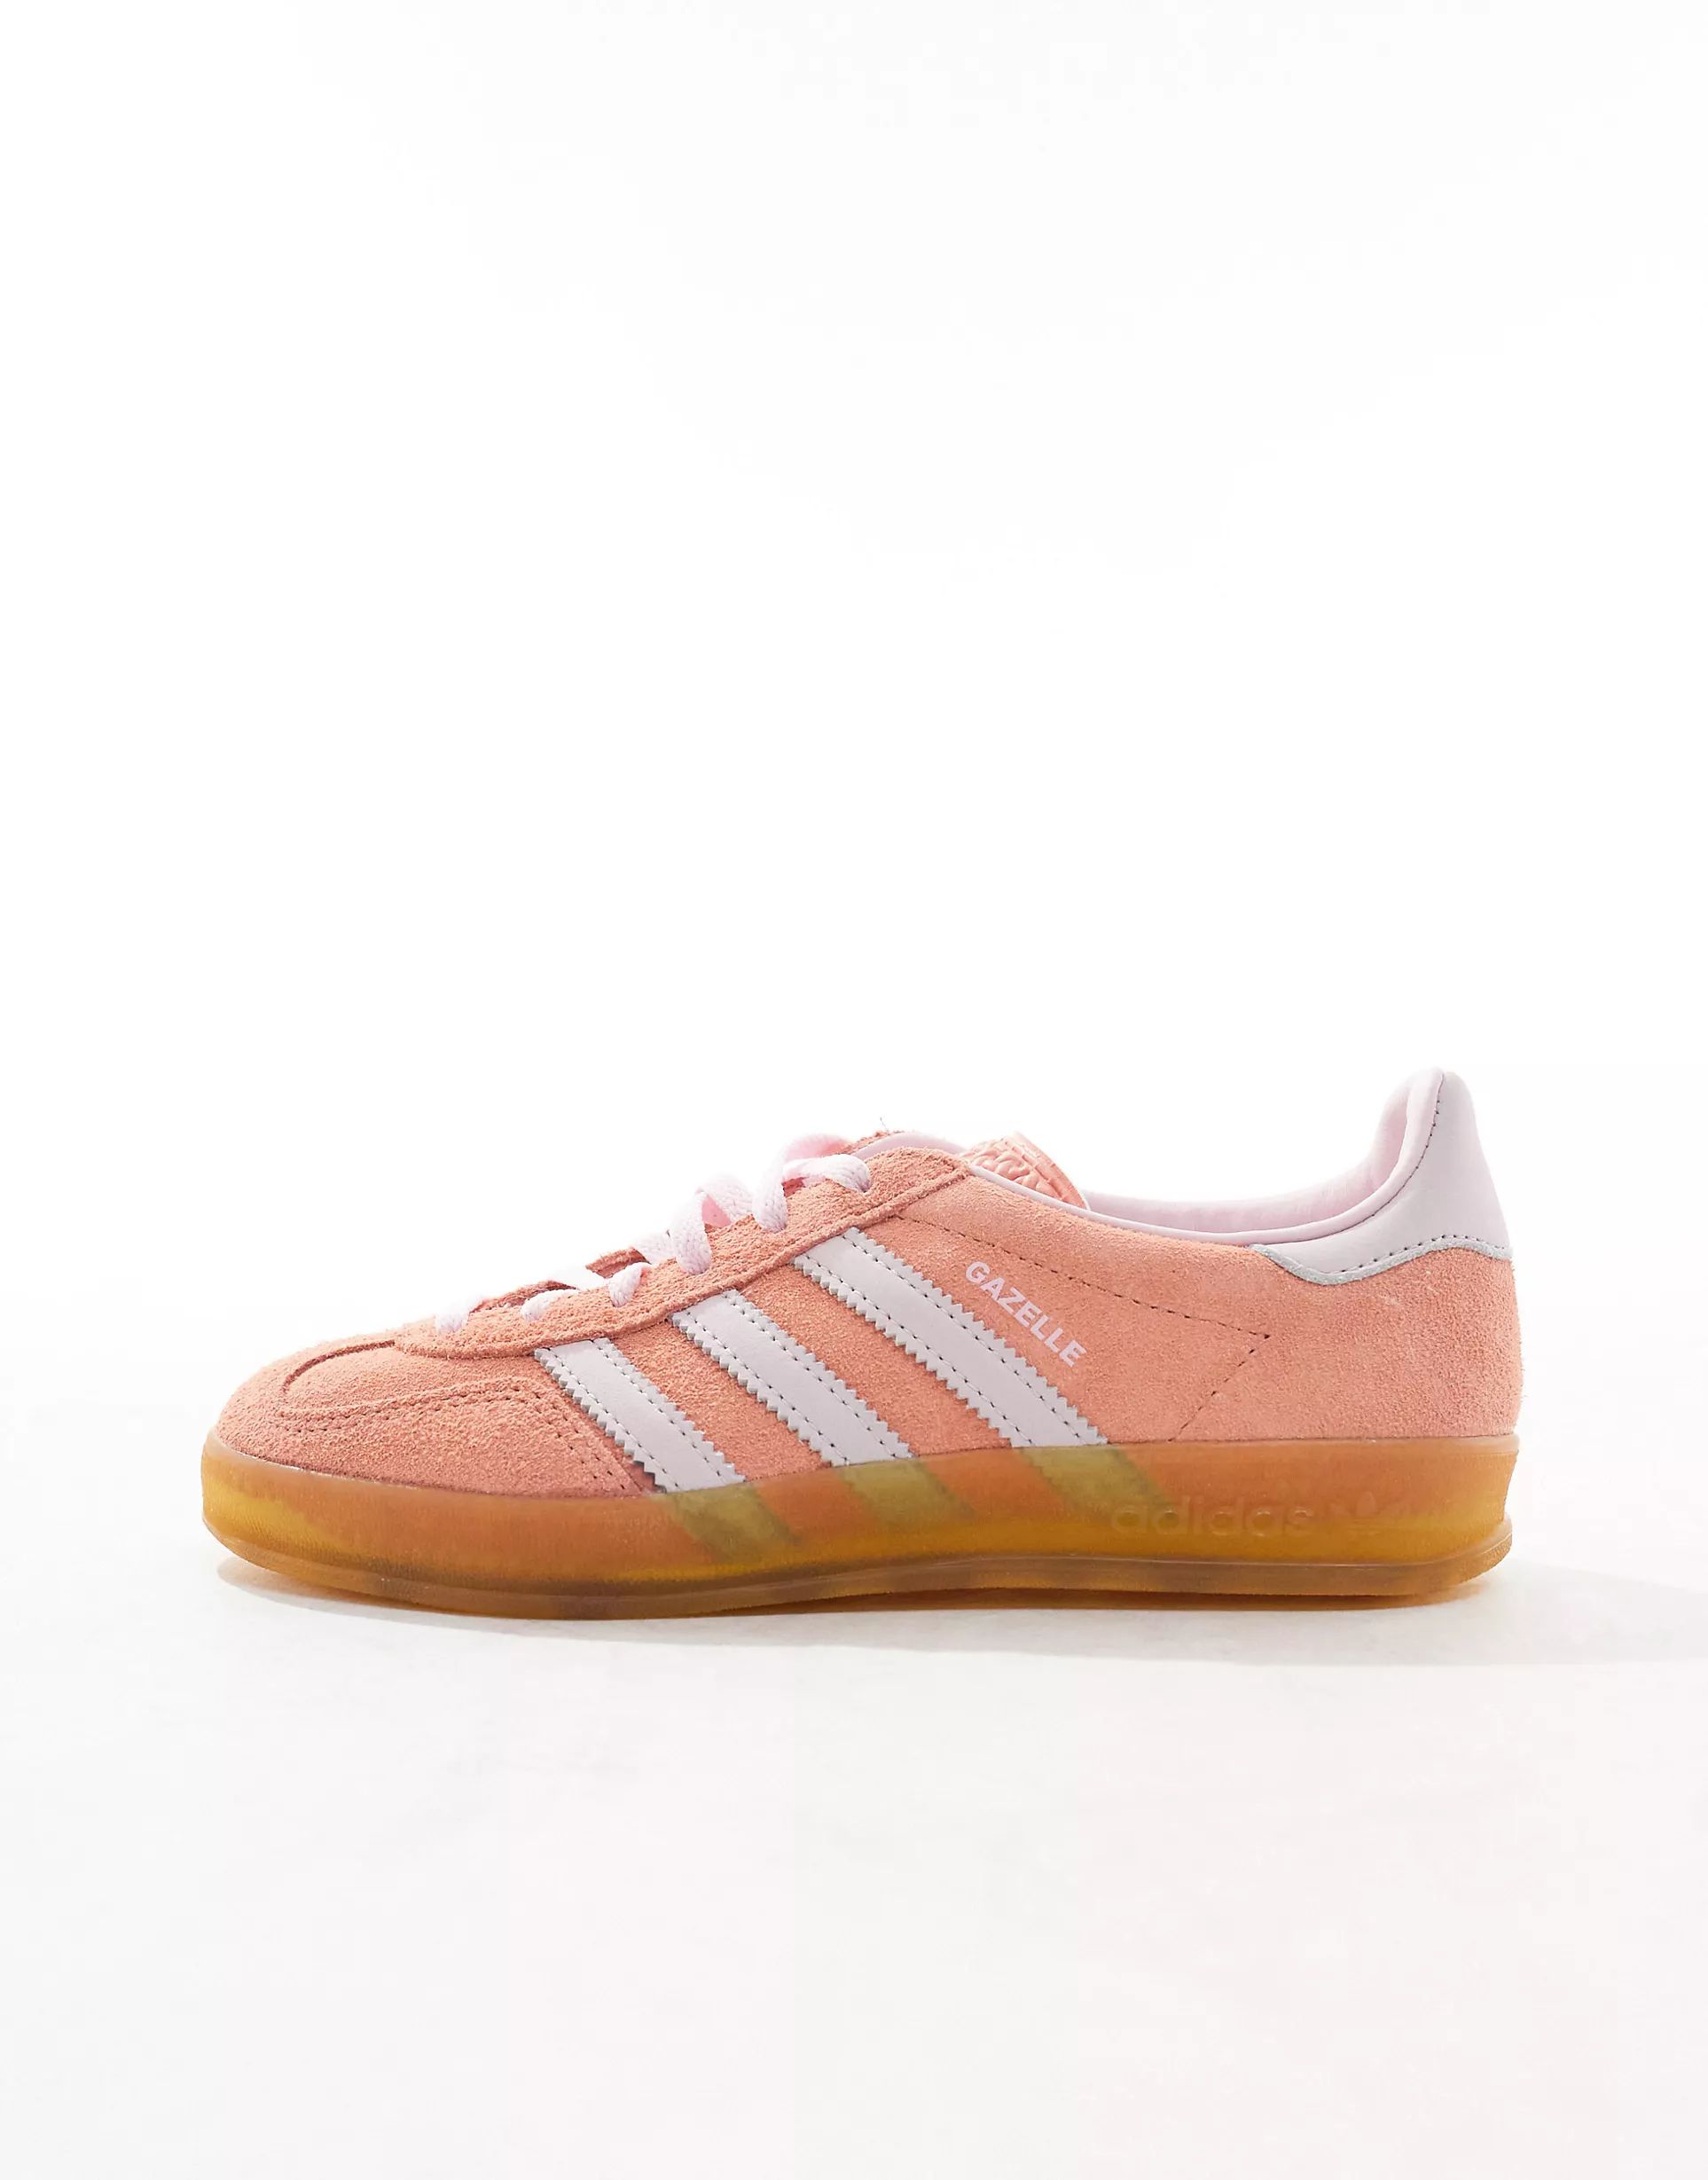 adidas Originals Gazelle Indoor gum sole sneakers in orange and pink | ASOS (Global)